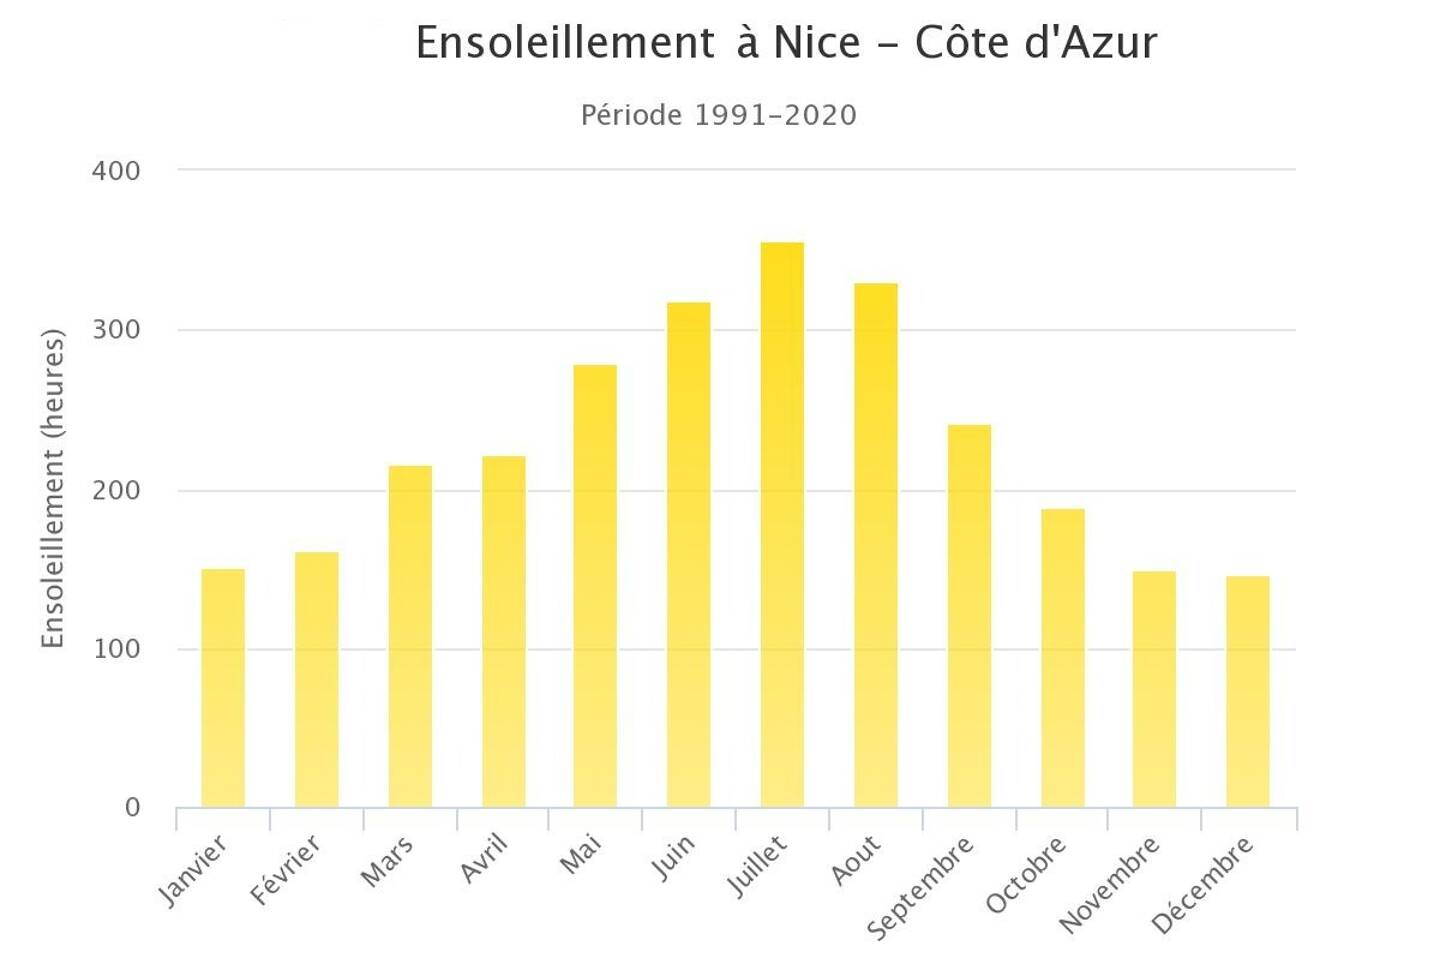 Ensoleillement moyen (en heures) à Nice, sur la période 1991-2020.